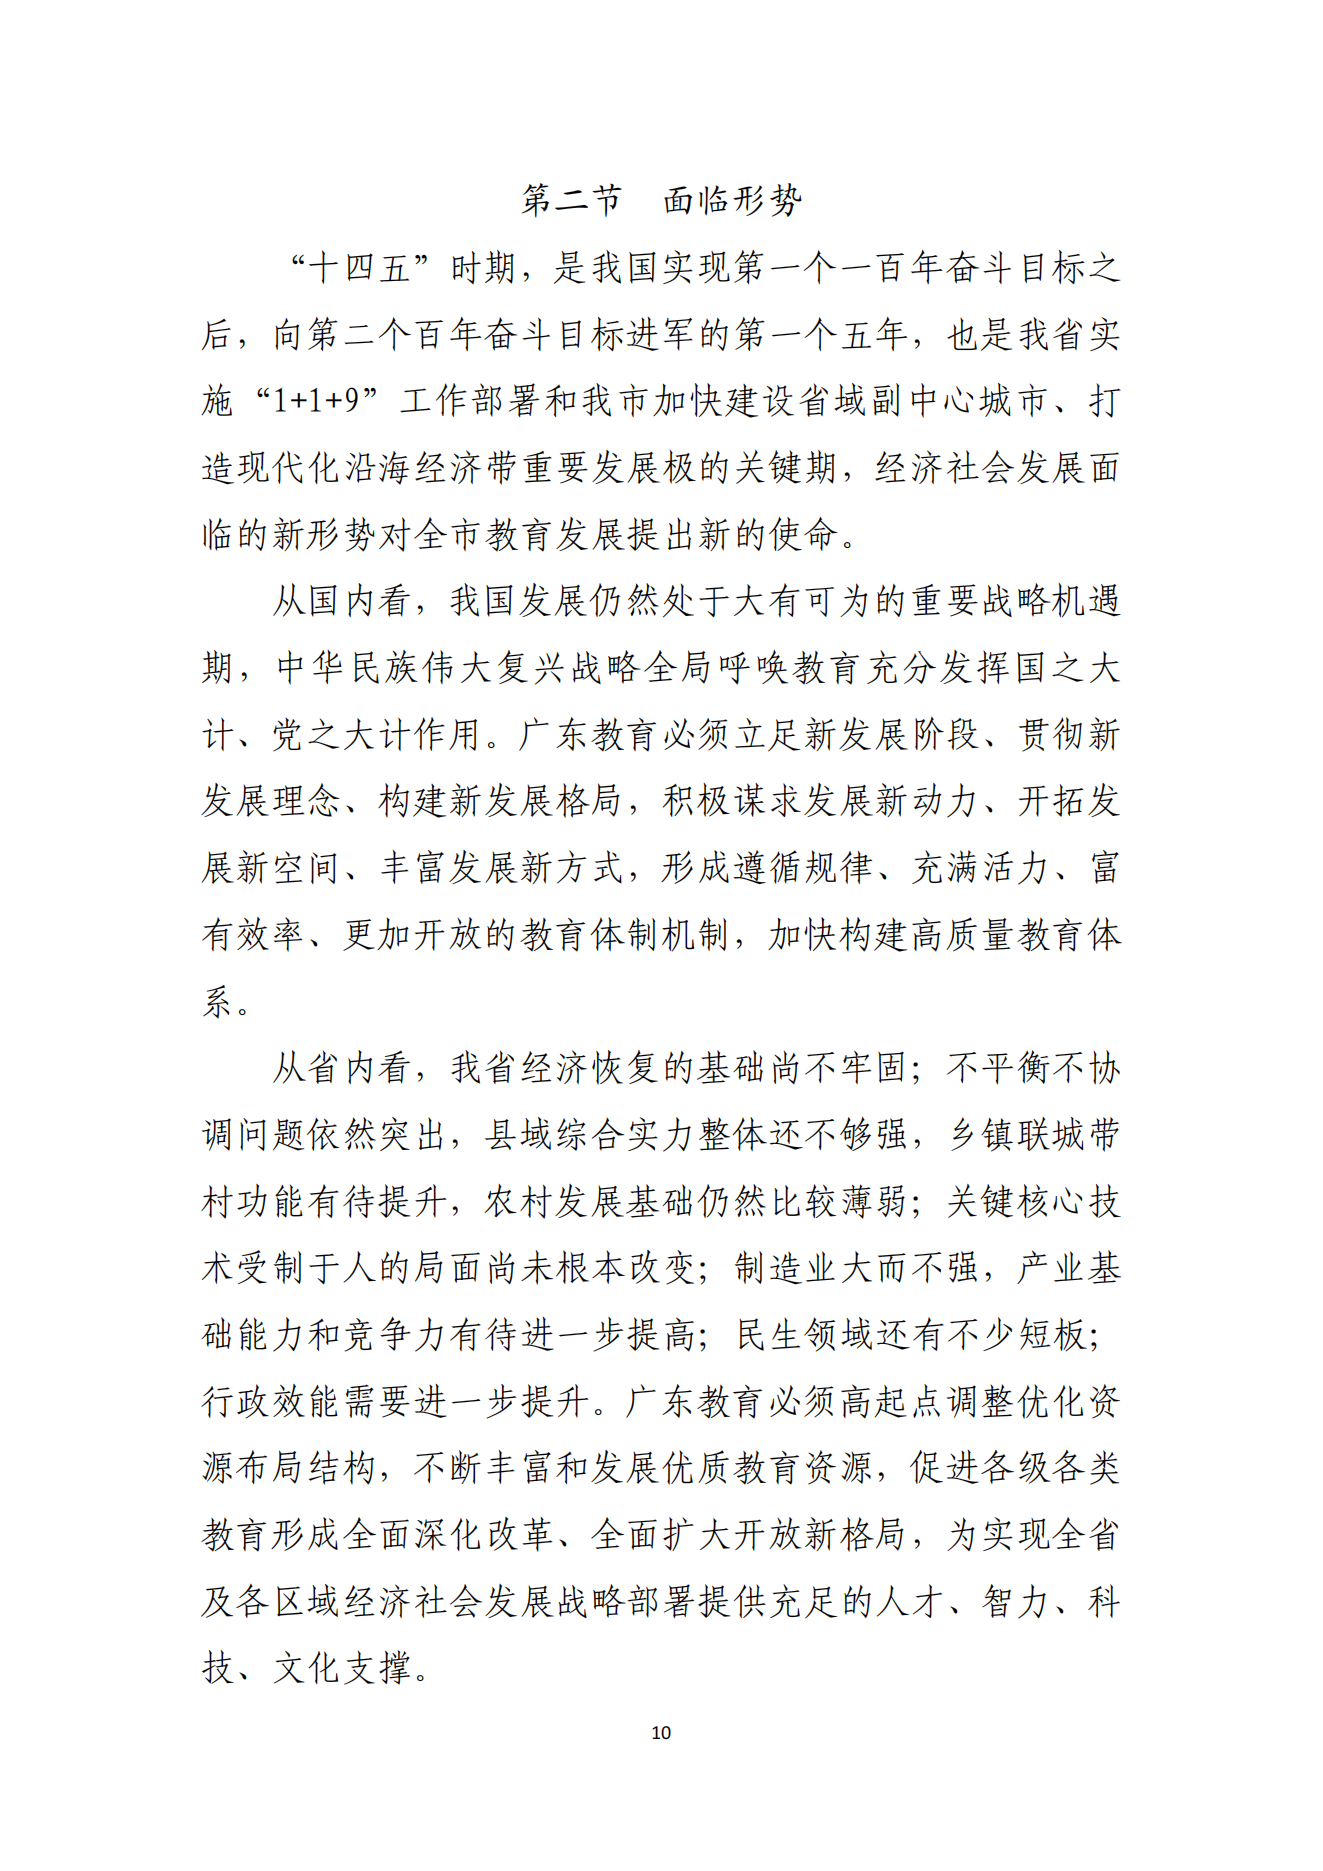 湛江市人民政府办公室关于印发湛江市教育发展“十四五”规划的通知_09.png